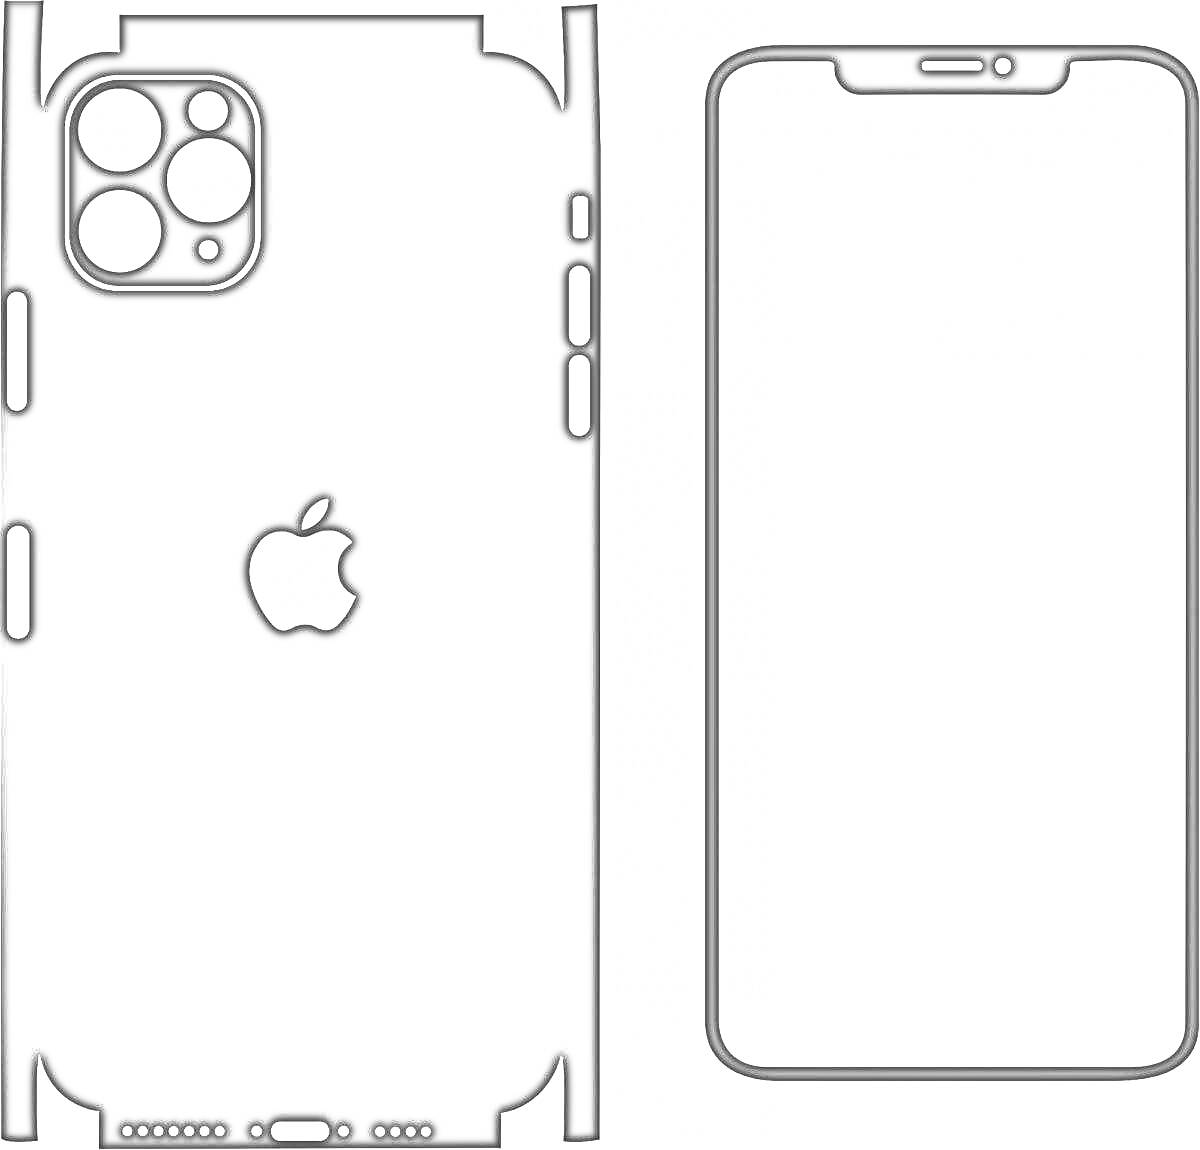 Раскраска Раскраска для iPhone 14 Pro Max, задняя и передняя панели с вырезами для камеры, кнопок и логотипом Apple